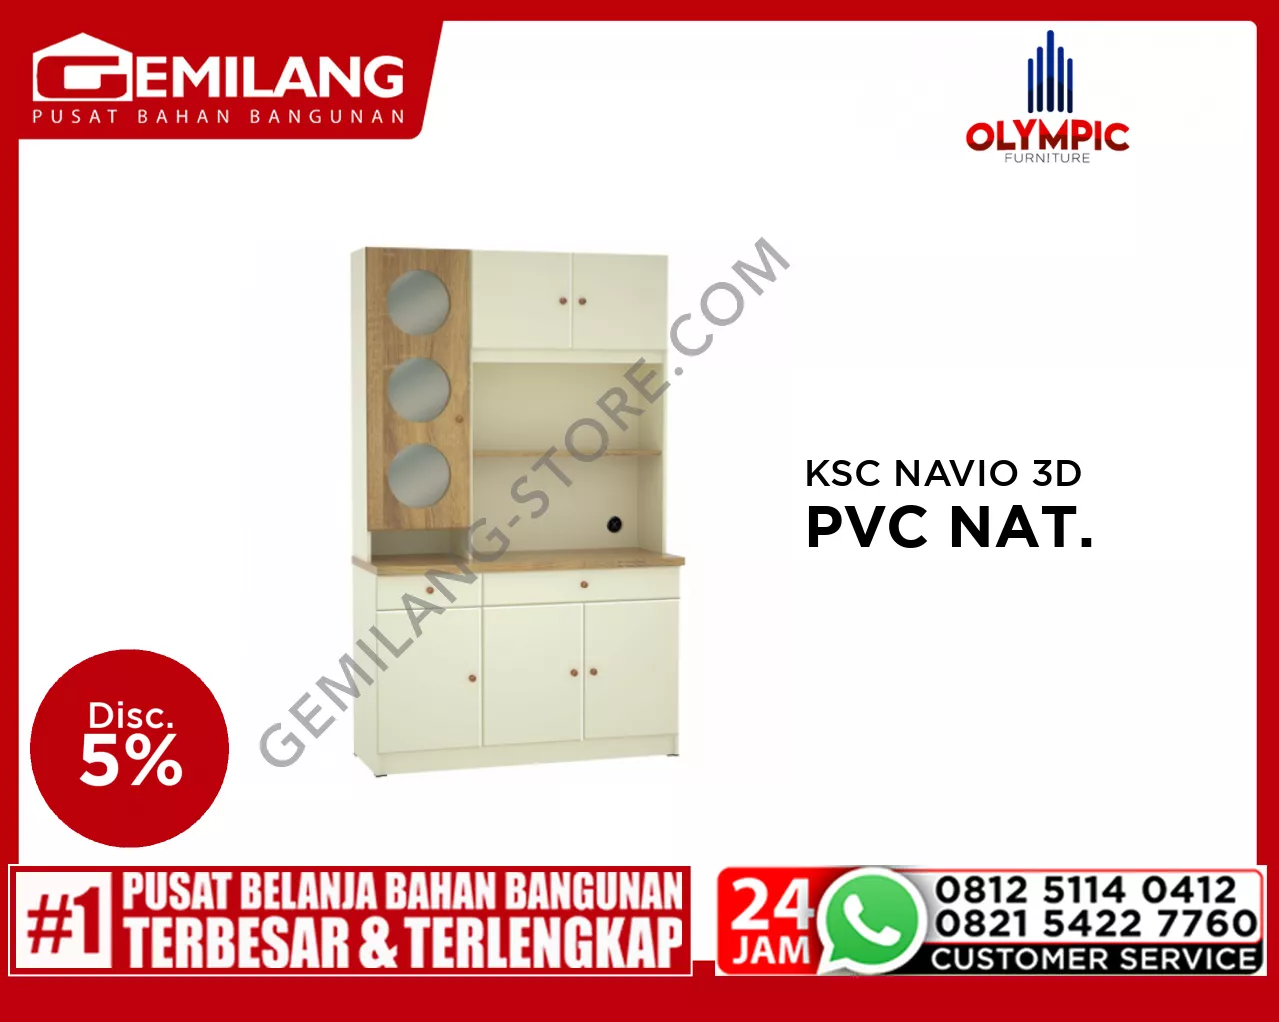 OLYMPIC KSC NAVIO 3D PVC NATURAL HOYO & CREAM BONE 1184 x 435 x 1900